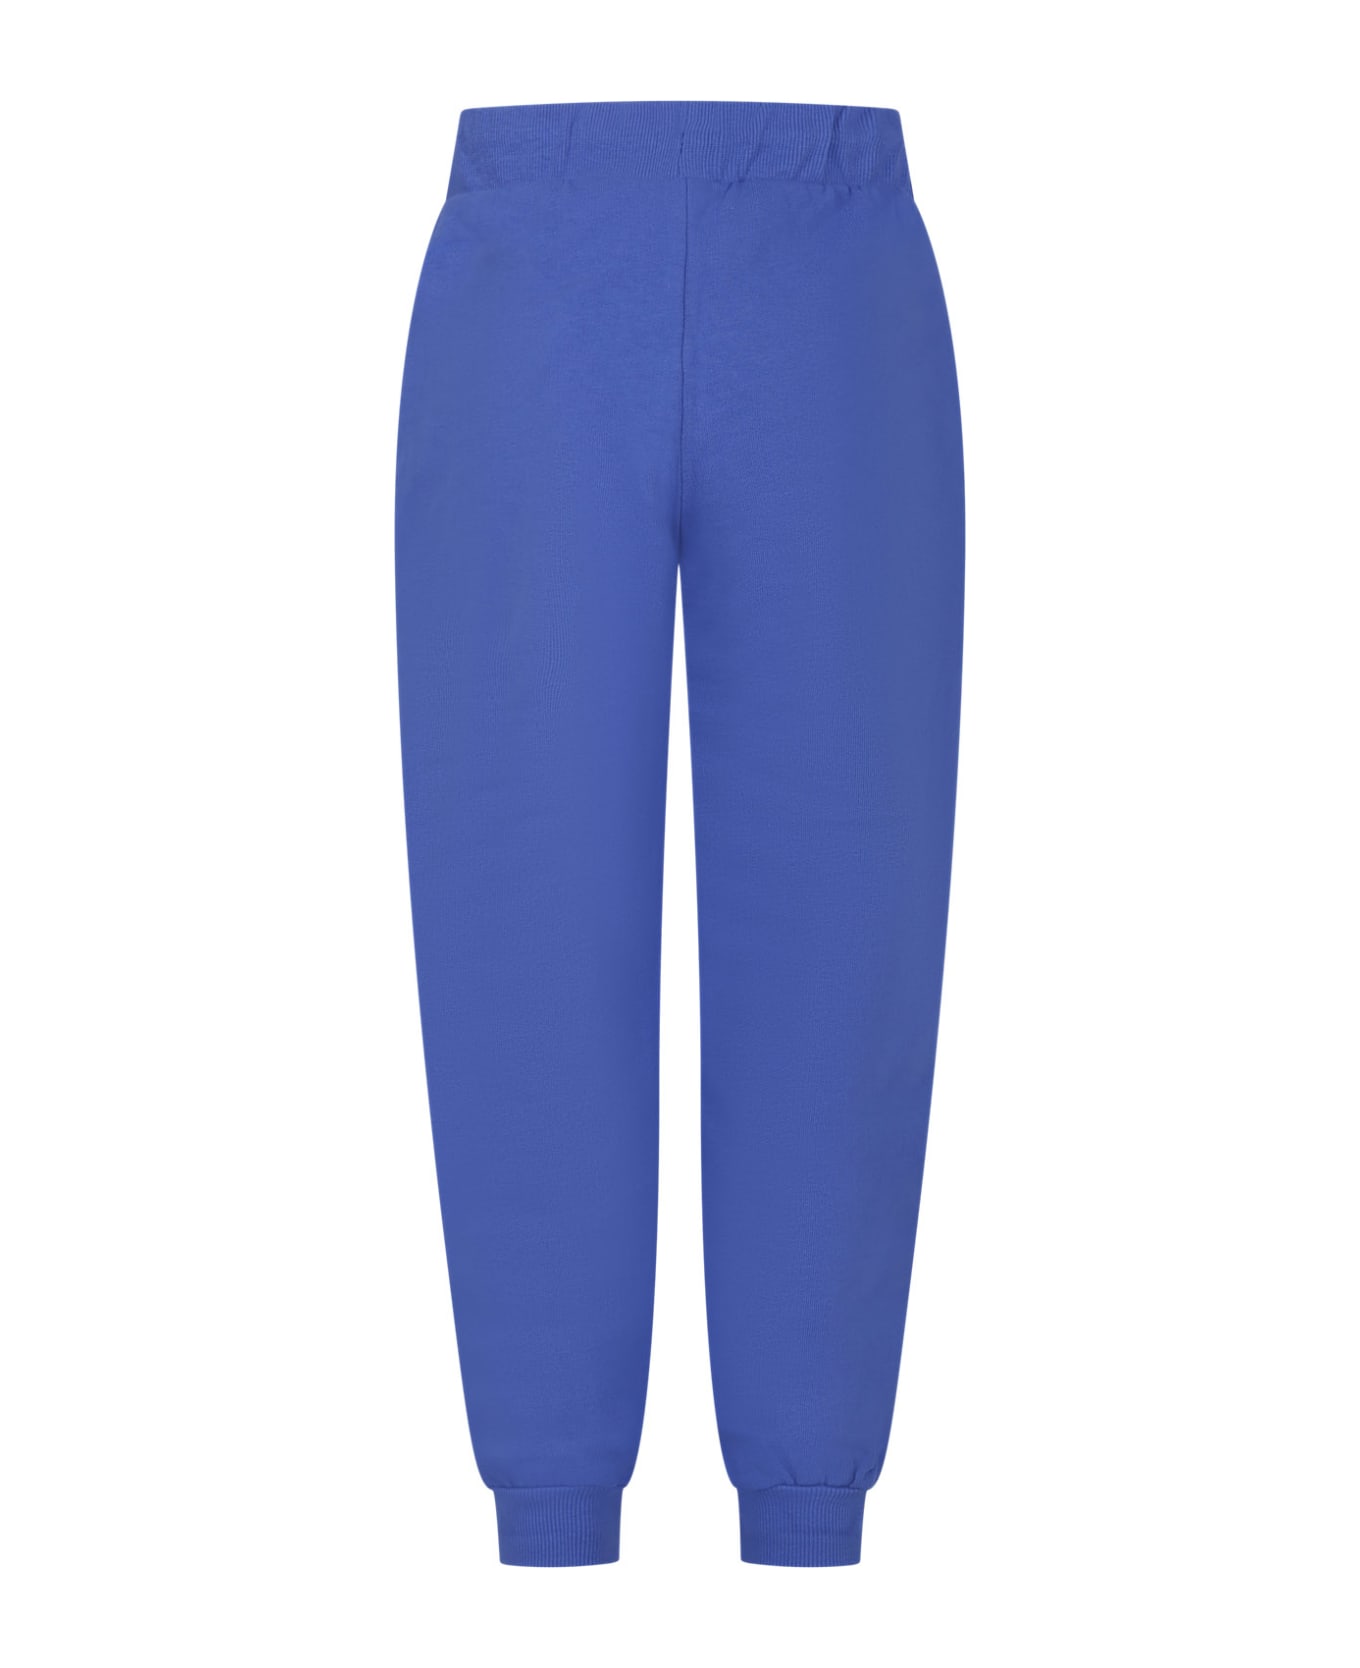 Mini Rodini Light Blue Sports Trousers For Kids - Light Blue ボトムス